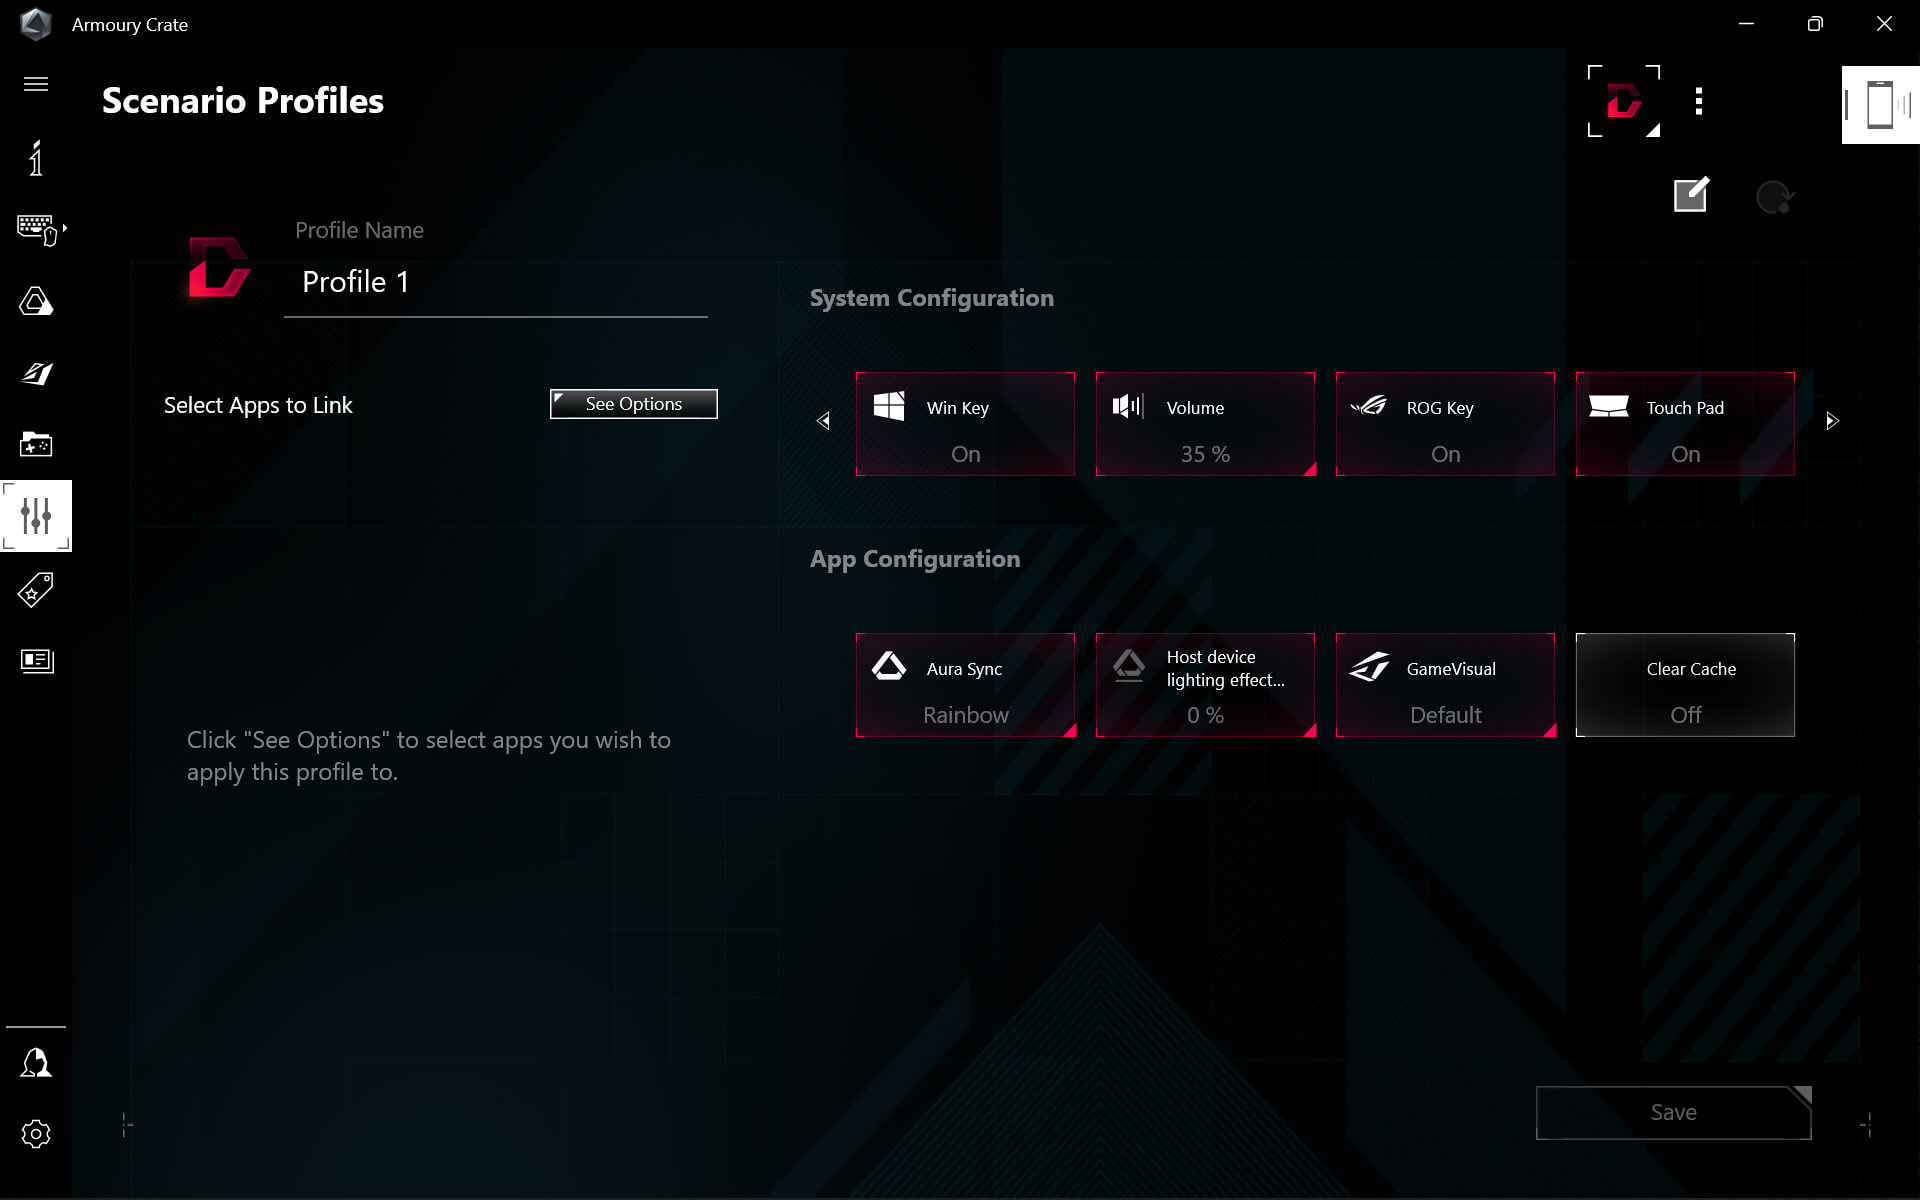 UI featuring Scenario Profiles